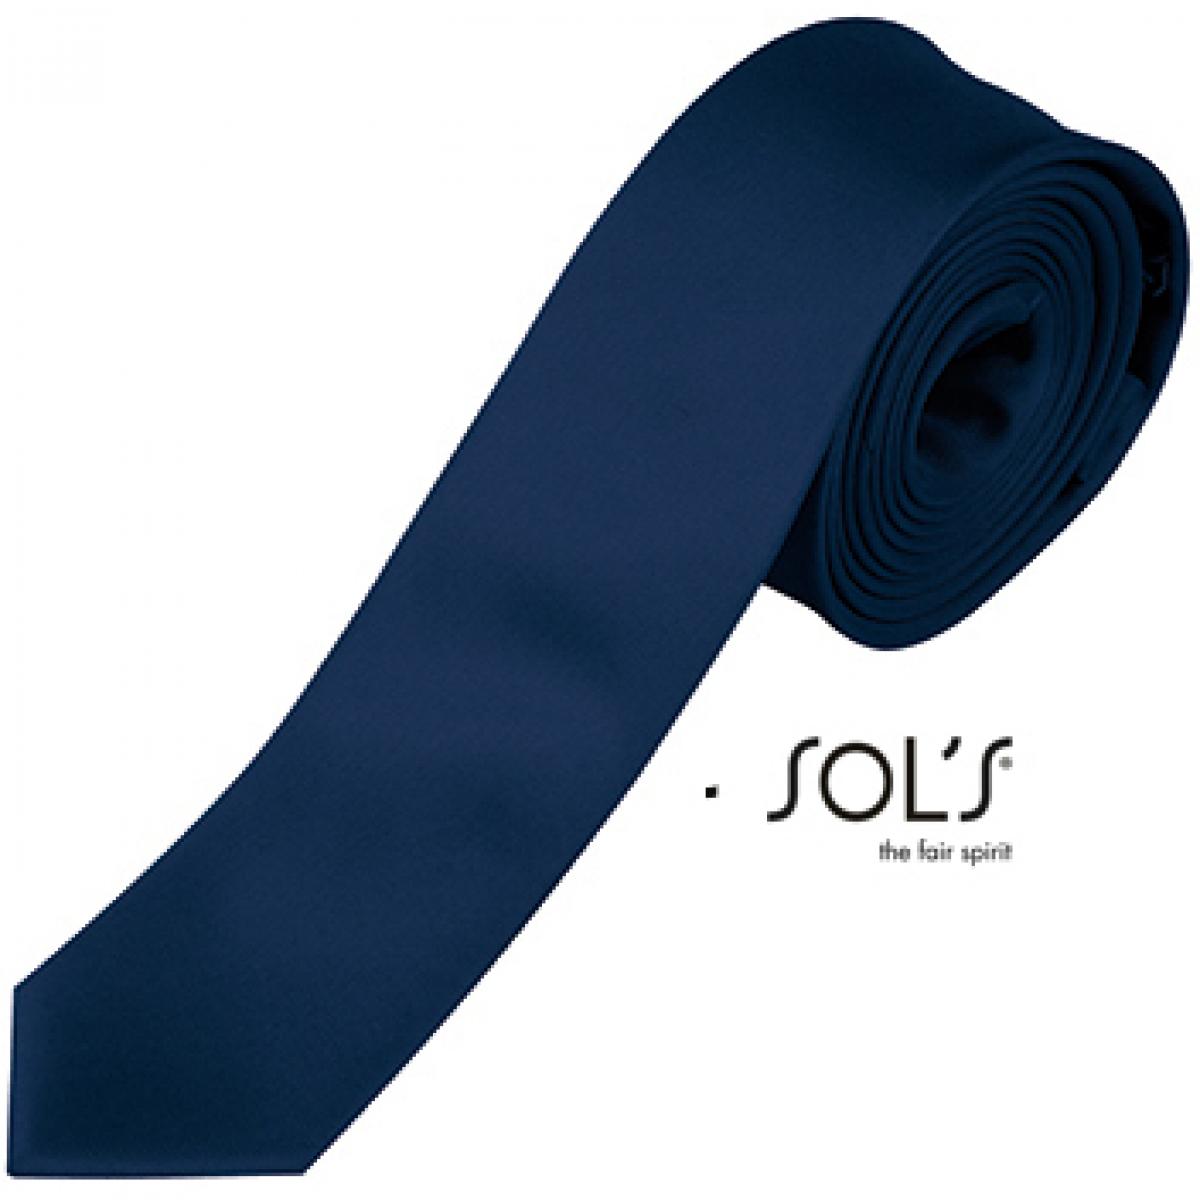 Hersteller: SOLs Herstellernummer: 00598 Artikelbezeichnung: Slim Tie Gatsby Krawatte Farbe: French Navy